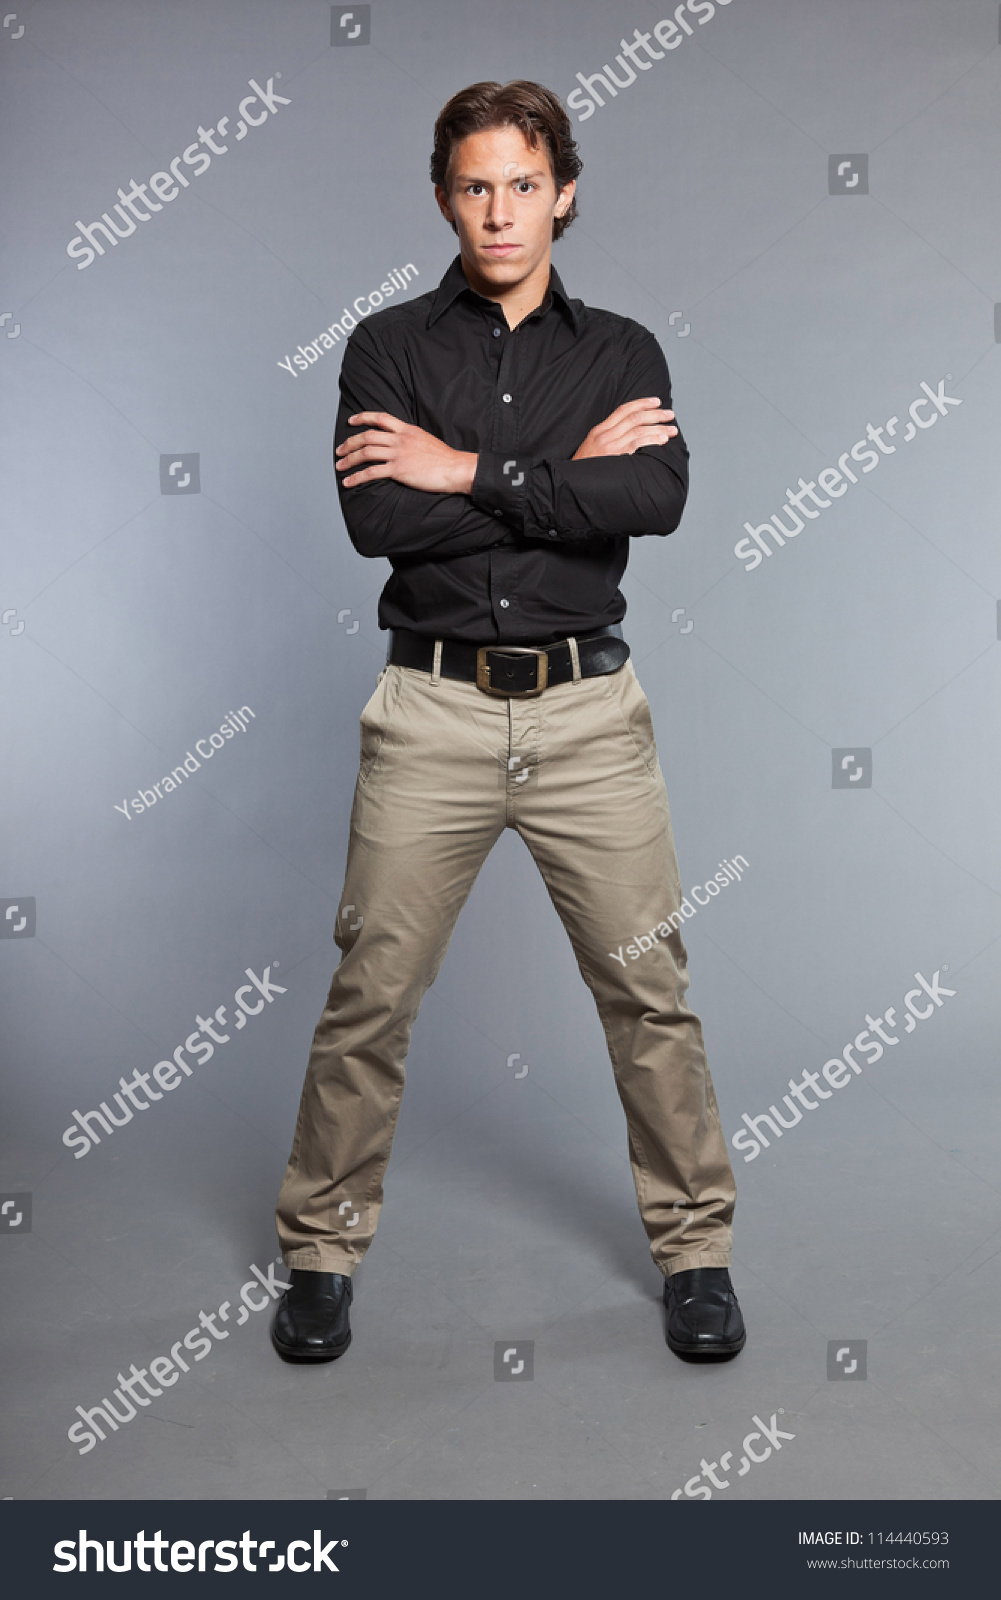 black dress shirt khaki pants